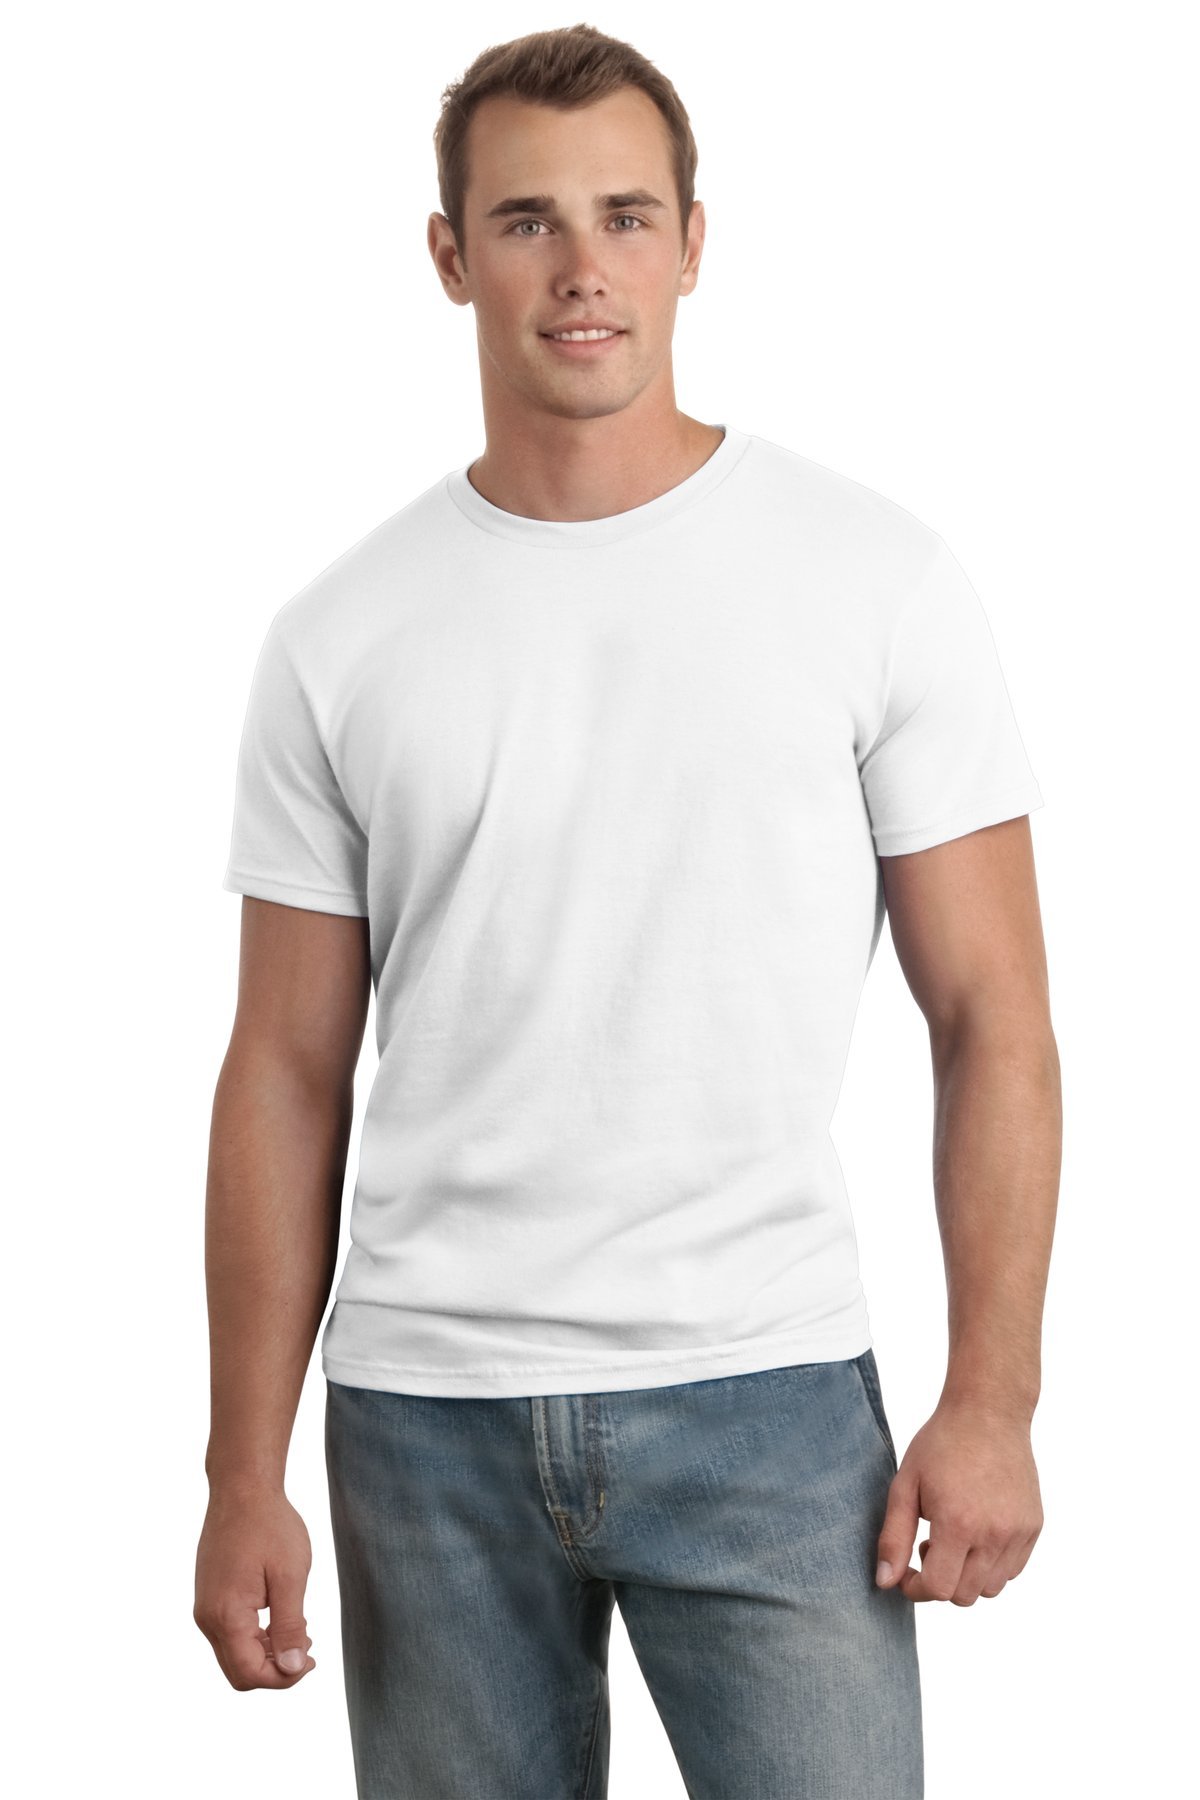 Hanes Men's Nano-T T-shirt, White 2XL(Tall)